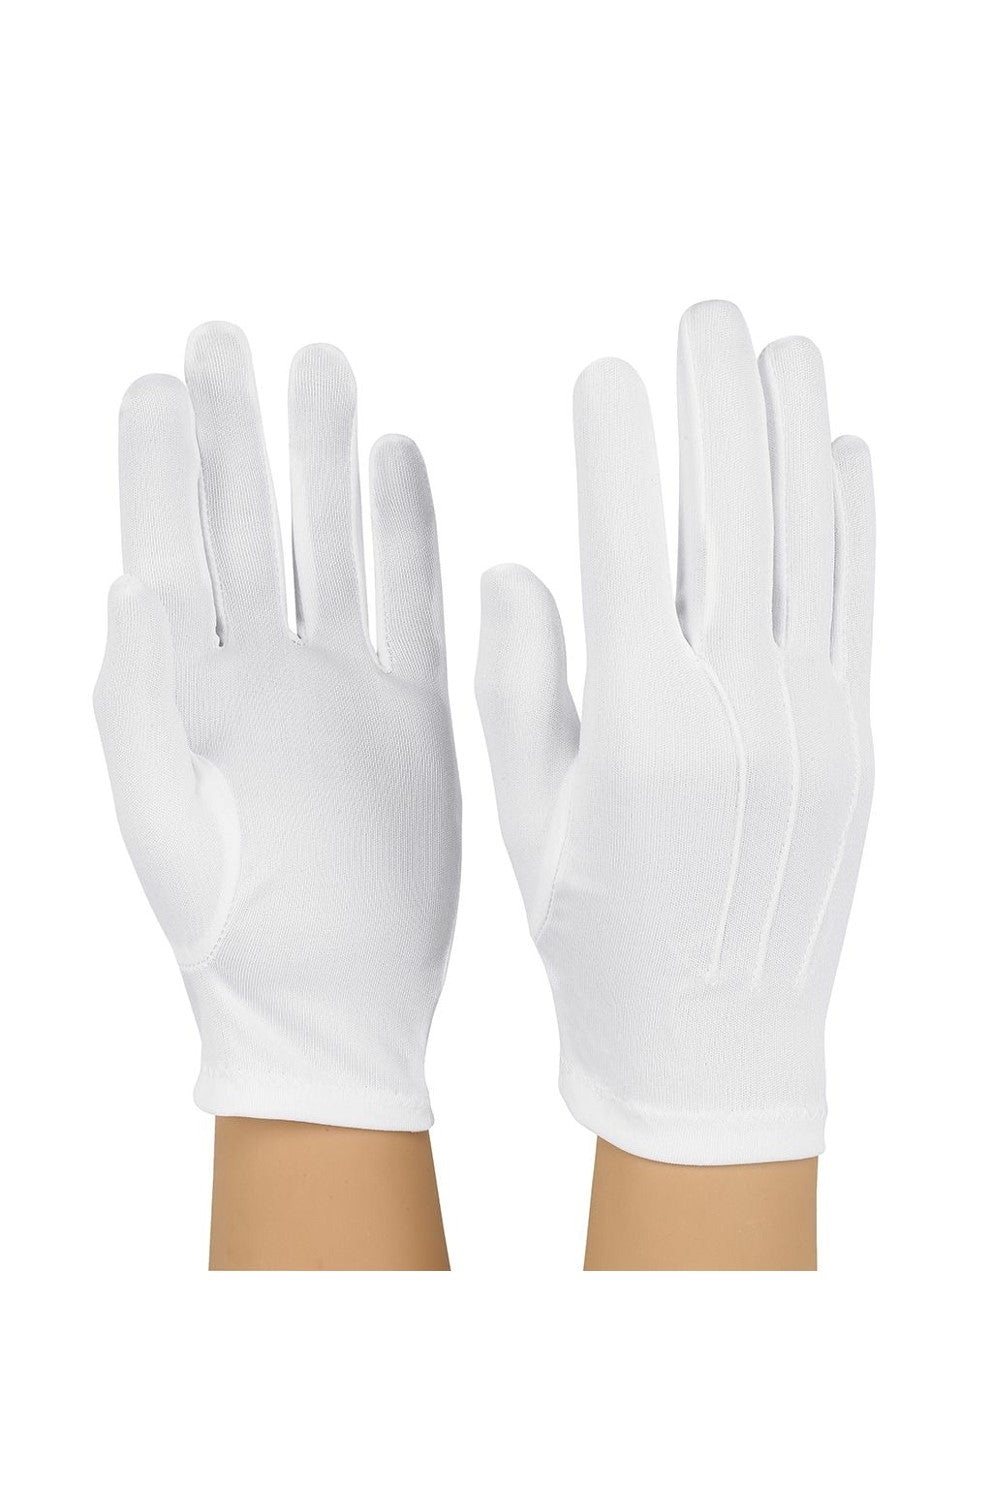 NYL100-Poly-Nylon Stretch Glove